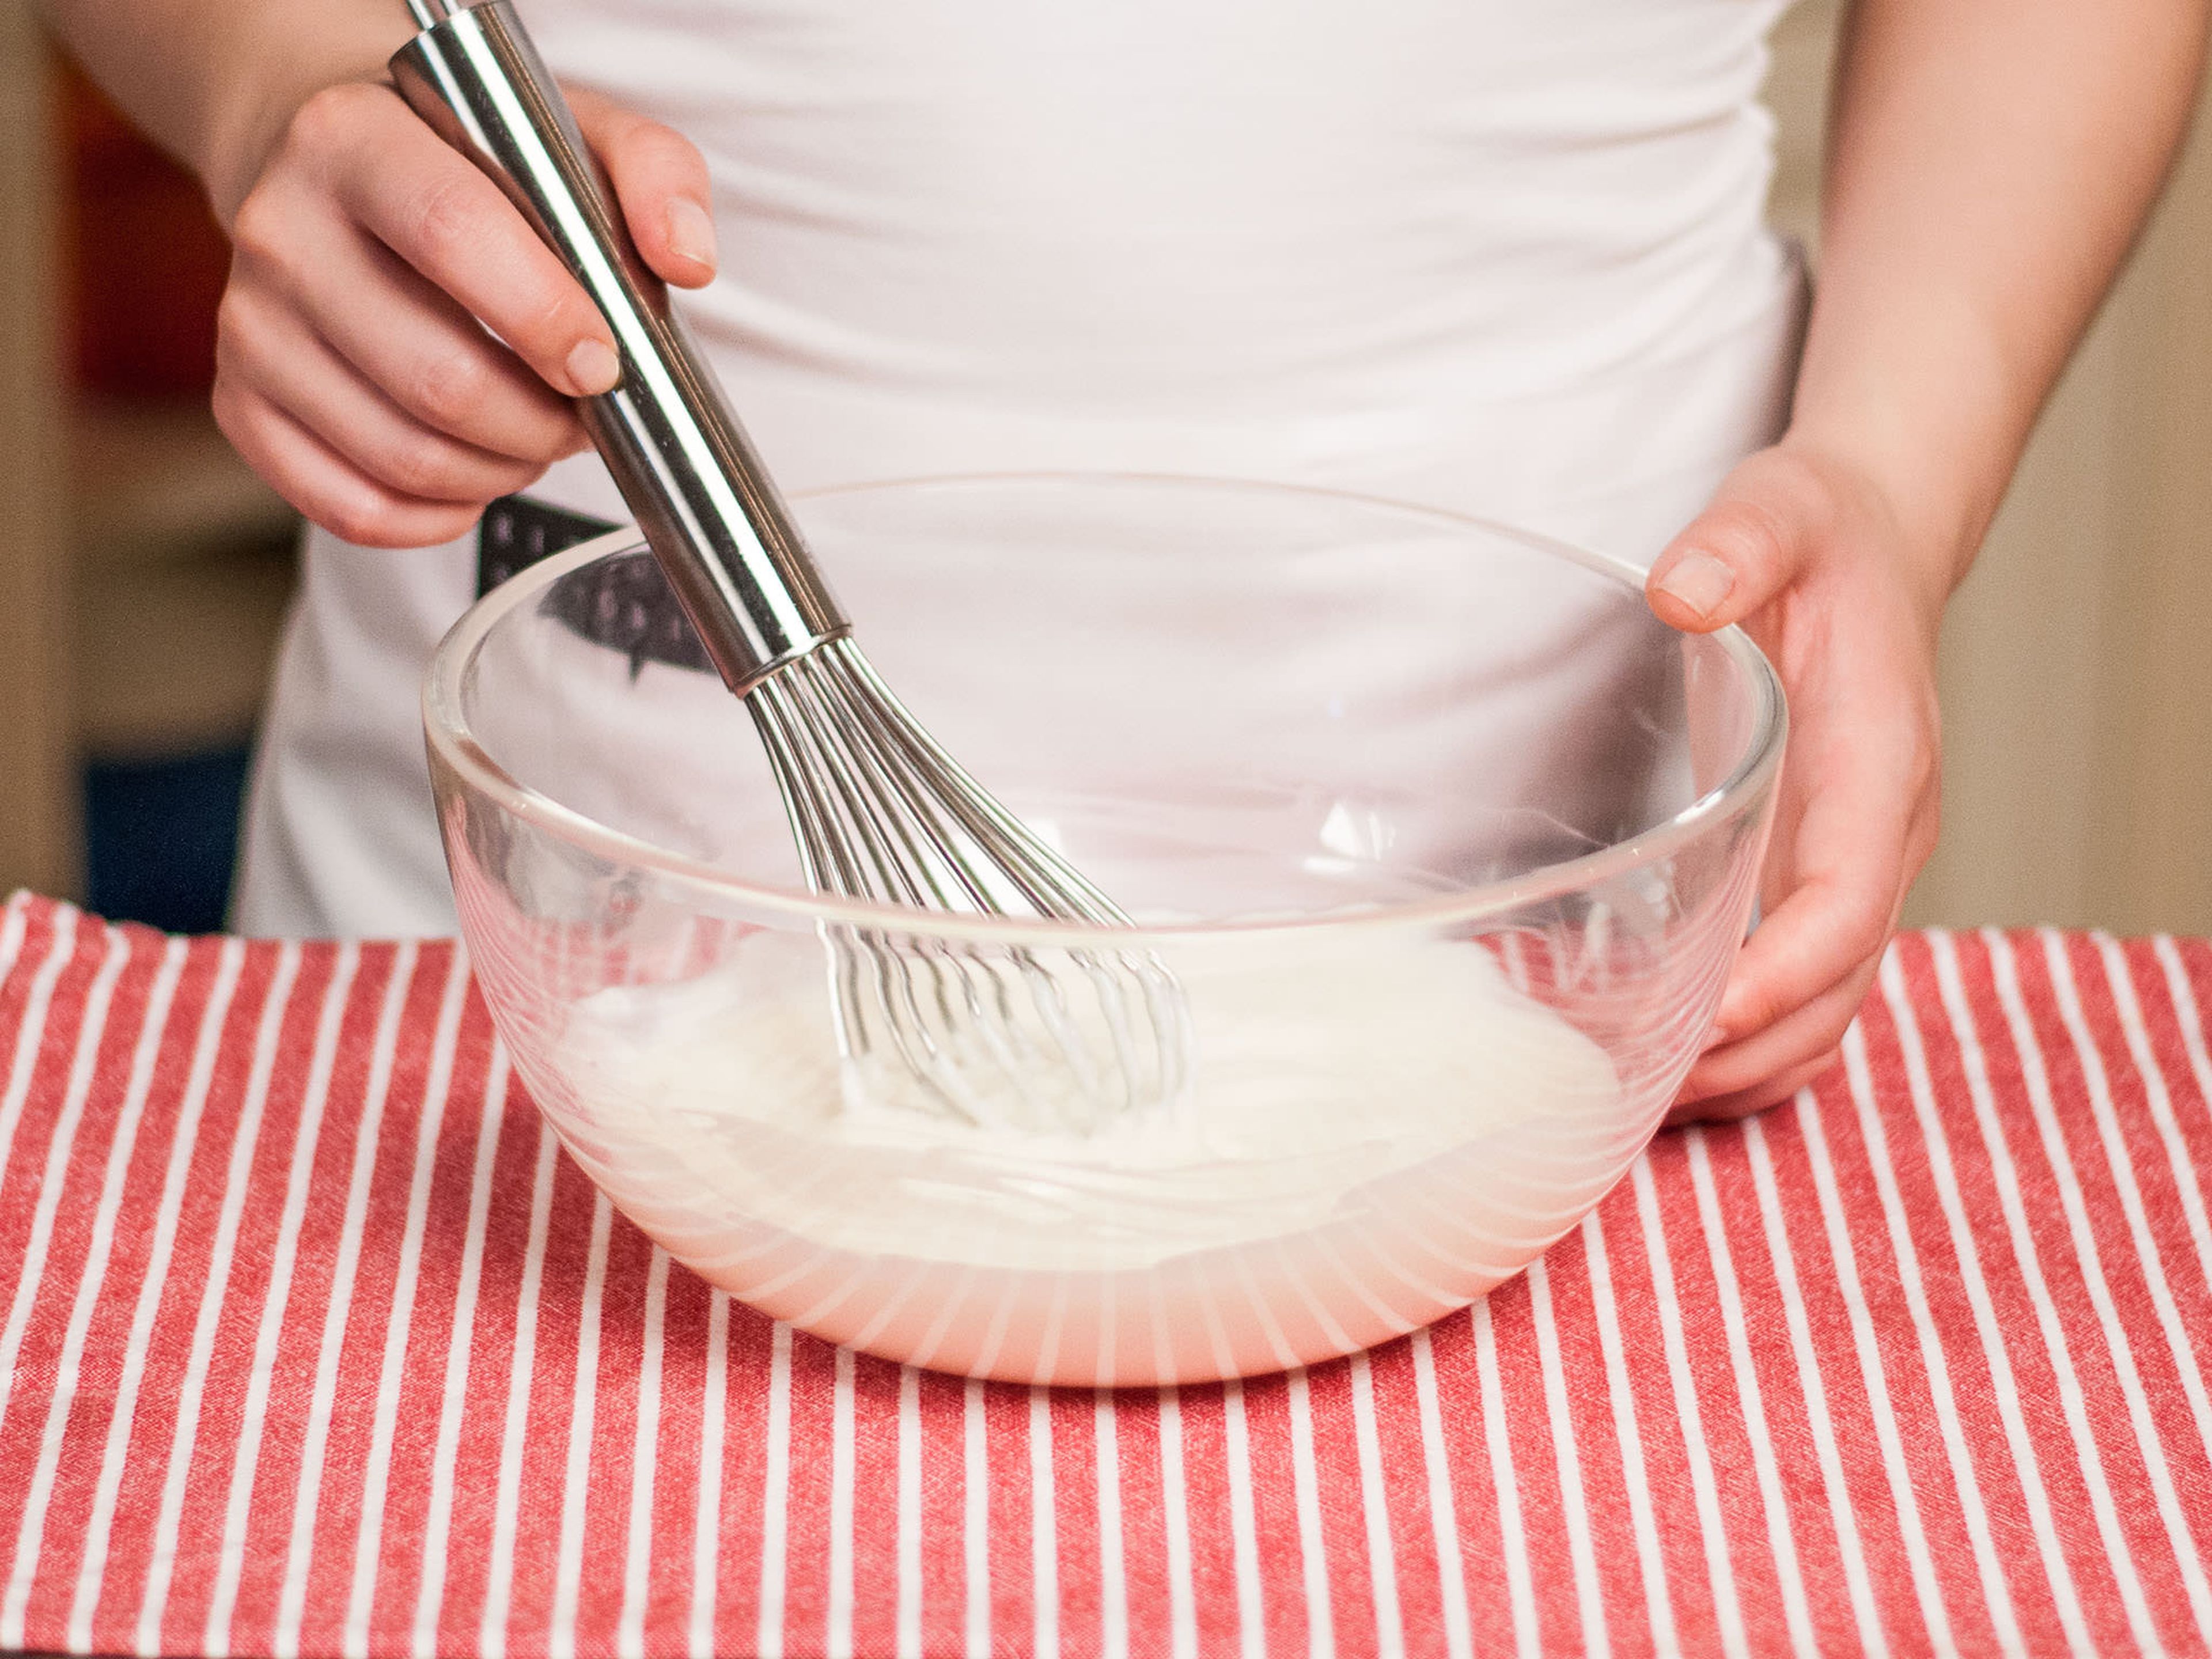 Griechischen Joghurt und Frischkäse mit Zucker und Vanillezucker zu einer geschmeidigen Masse verrühren.